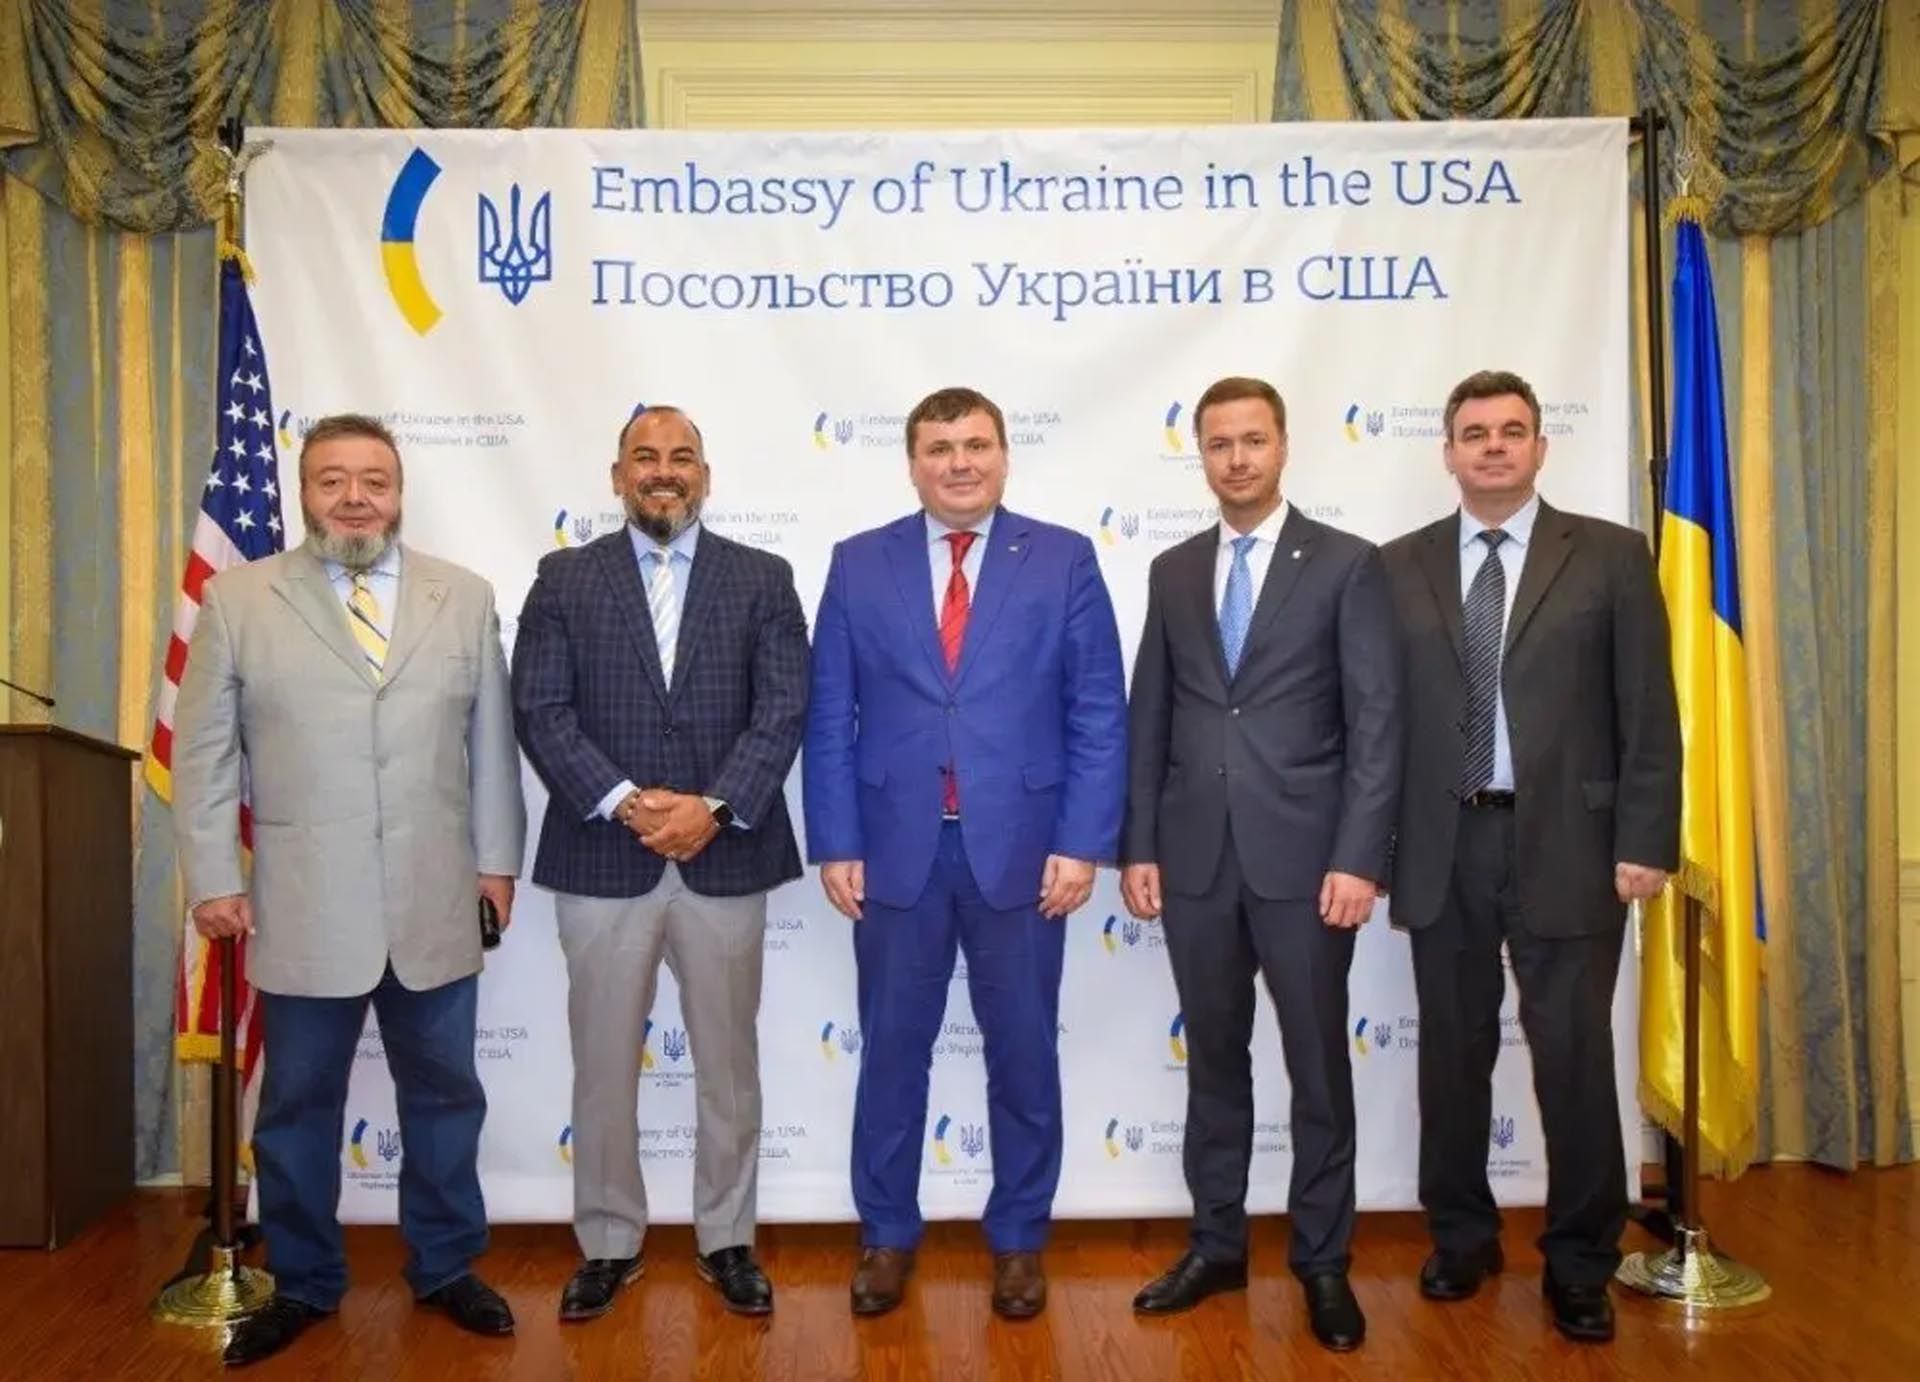 Vladimir Koyfman, a la izquierda, y Marc Morales, segundo por la izquierda, después de que Global Ordnance y Ukroboronprom, productor estatal de armas, firmaran un acuerdo que permite al gobierno ucraniano recurrir a Global Ordnance para obtener armas y municiones